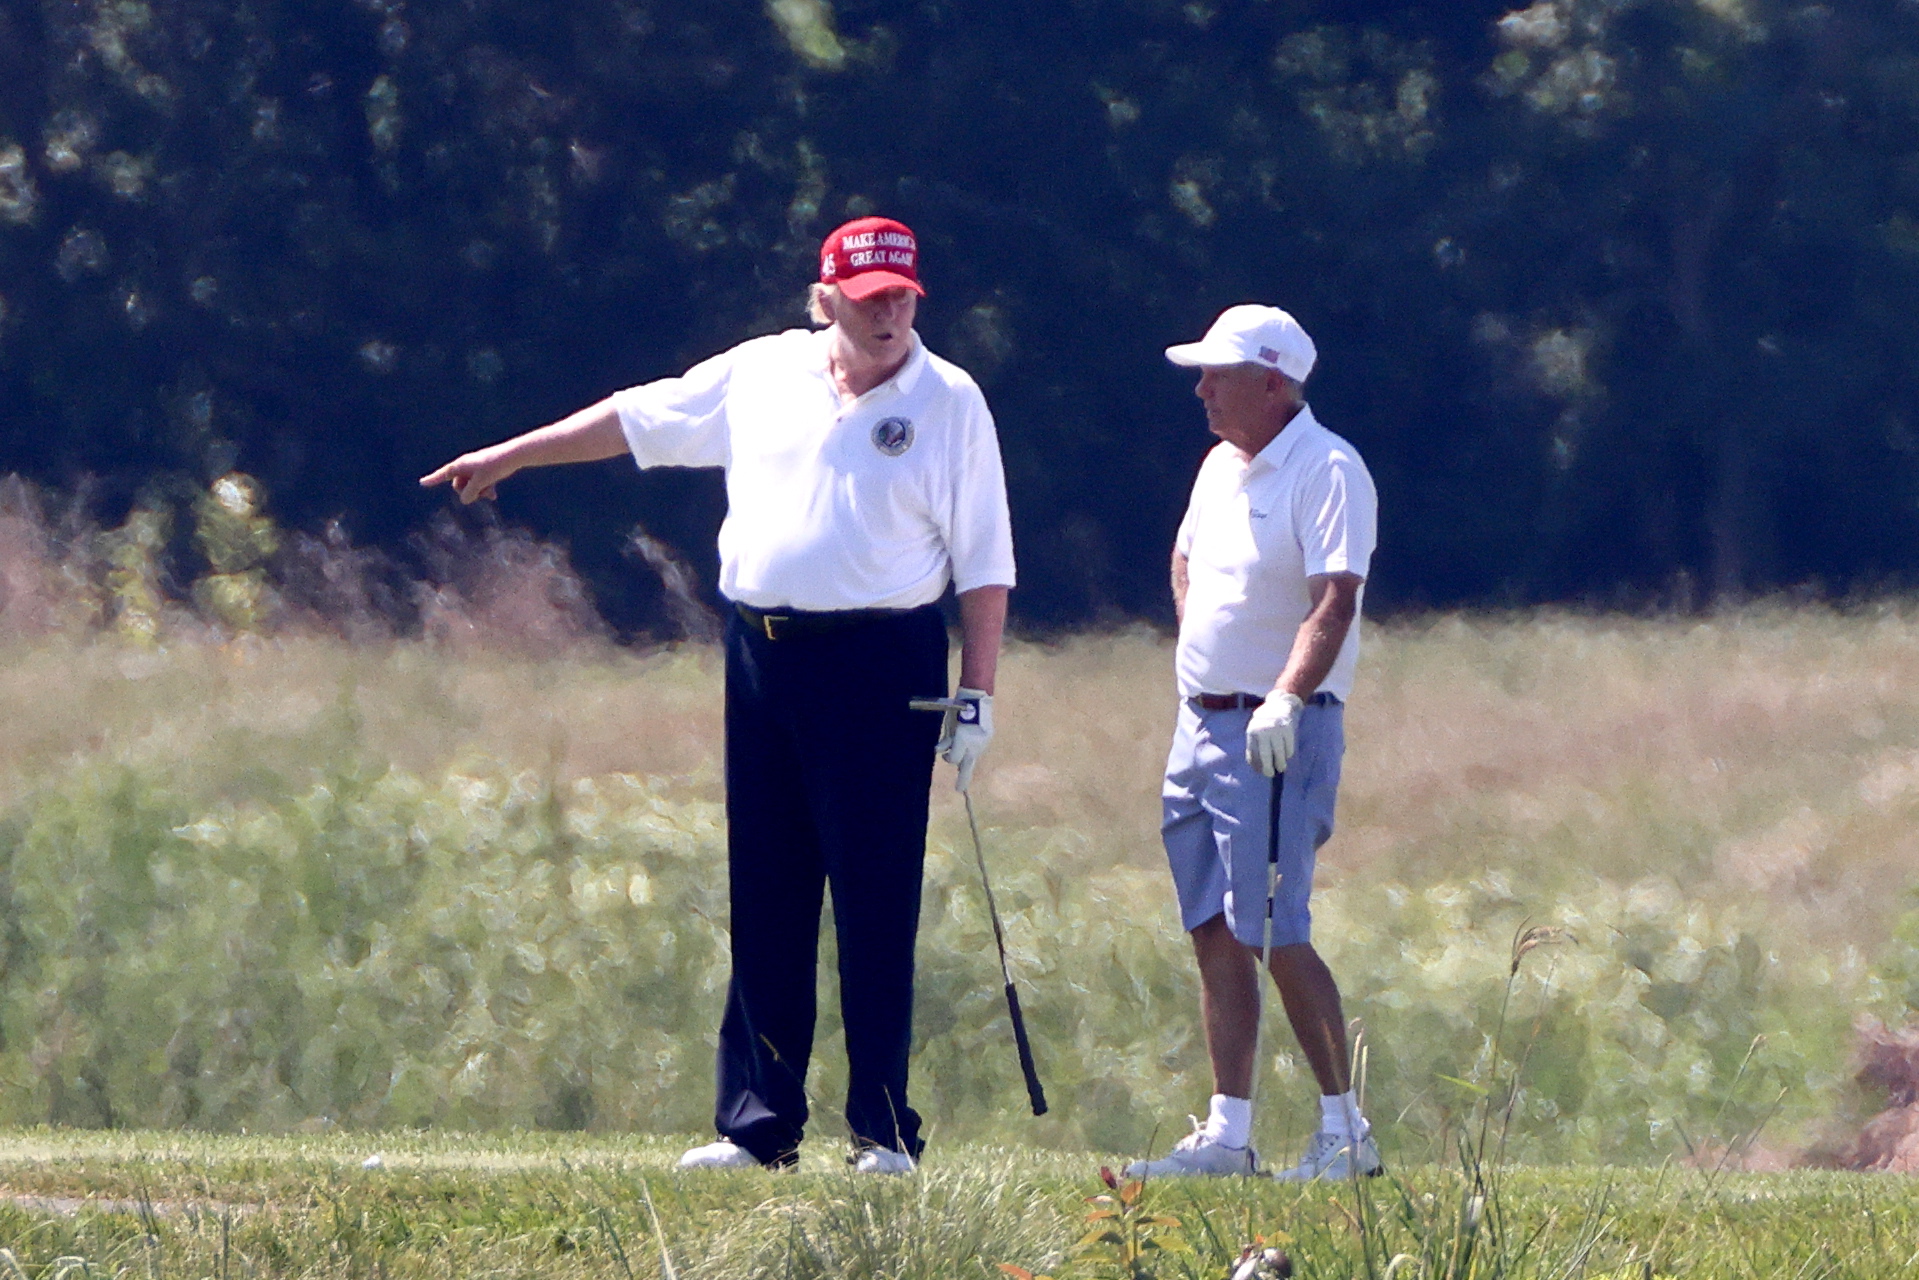 Трамп сорвался на лунку и мячик для гольфа